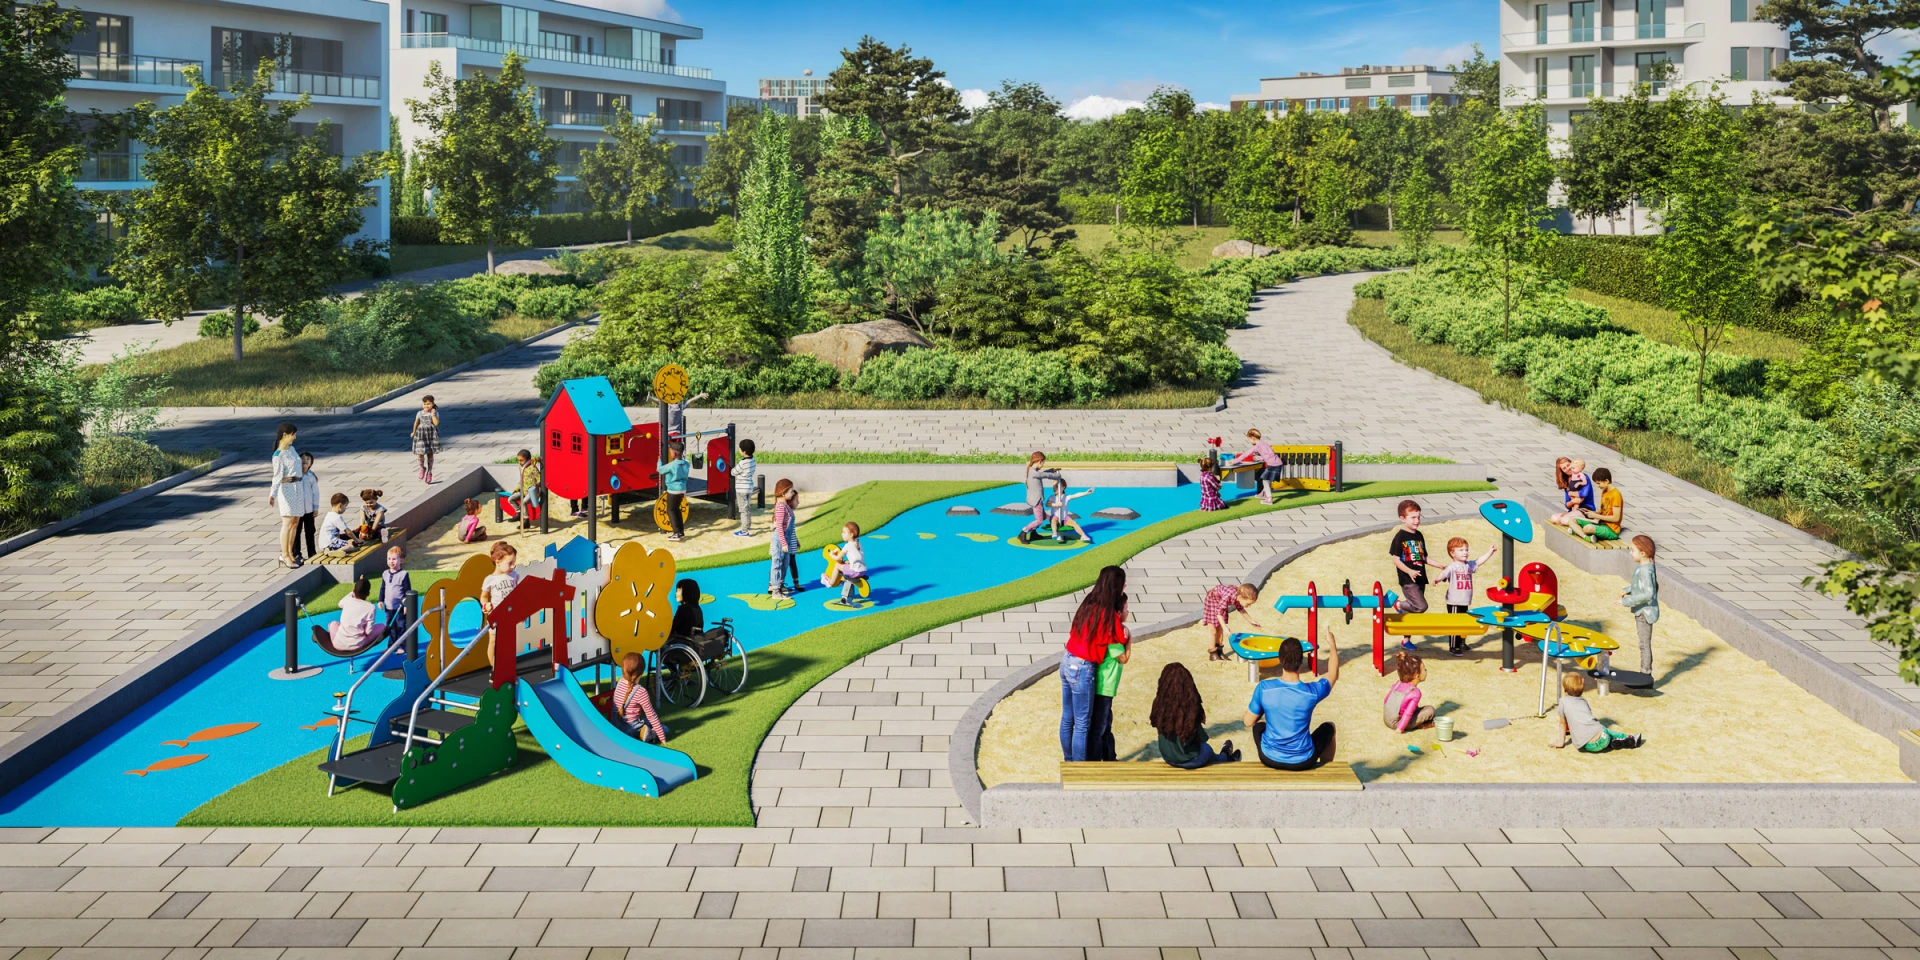 Idea de diseño de un parque infantil para una asociación de viviendas 